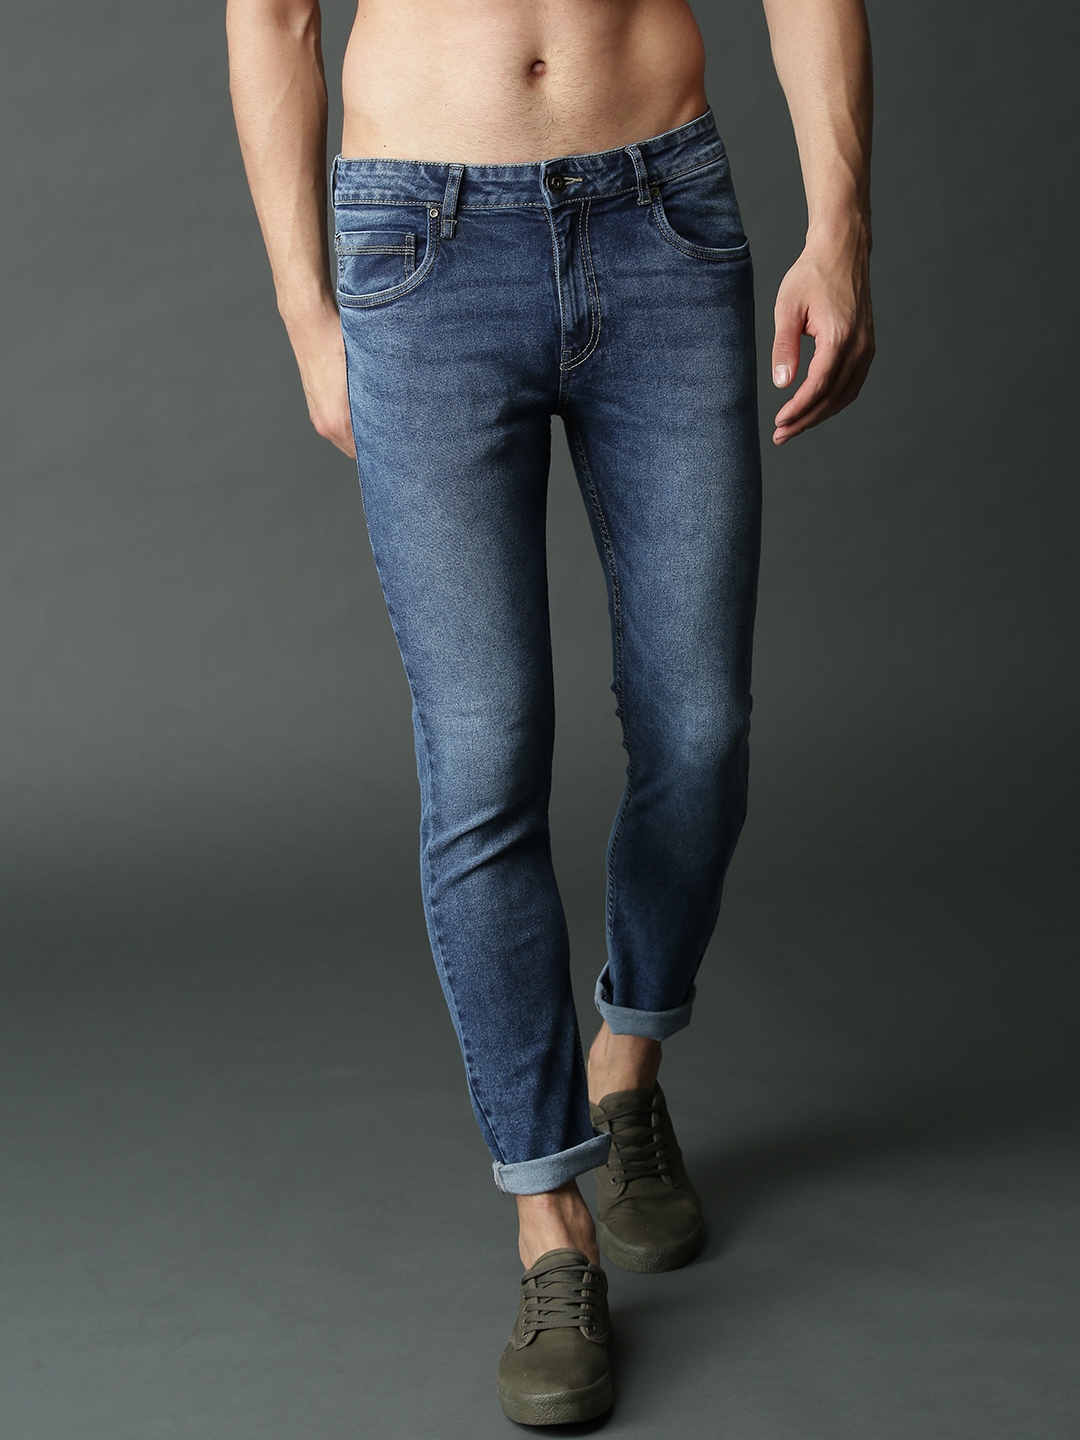 wrangler 36mwz jeans